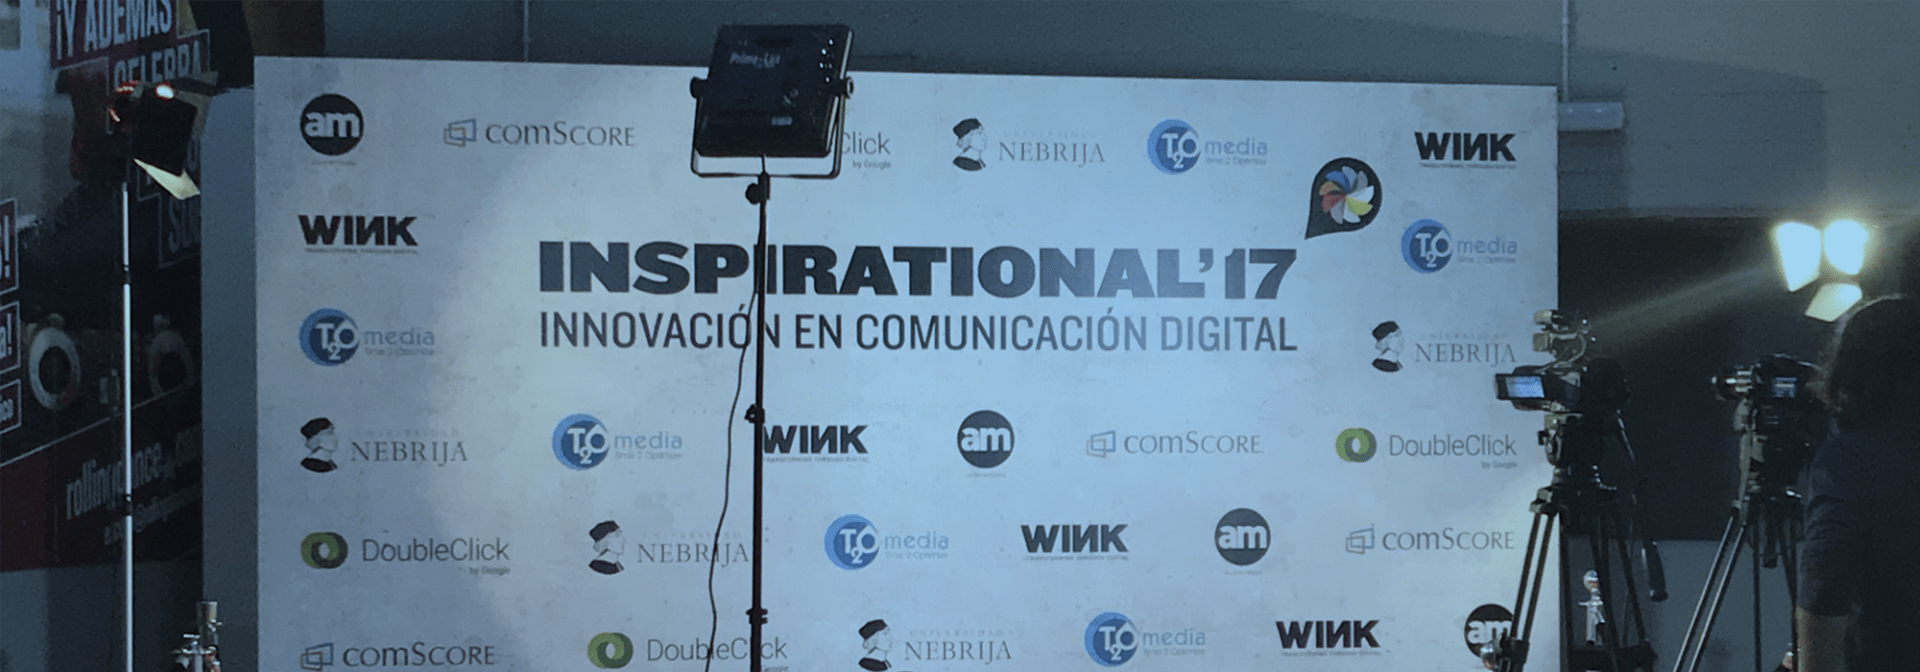 Patrocinio sala de Transformación Digital en el Festival Inspirational 2017